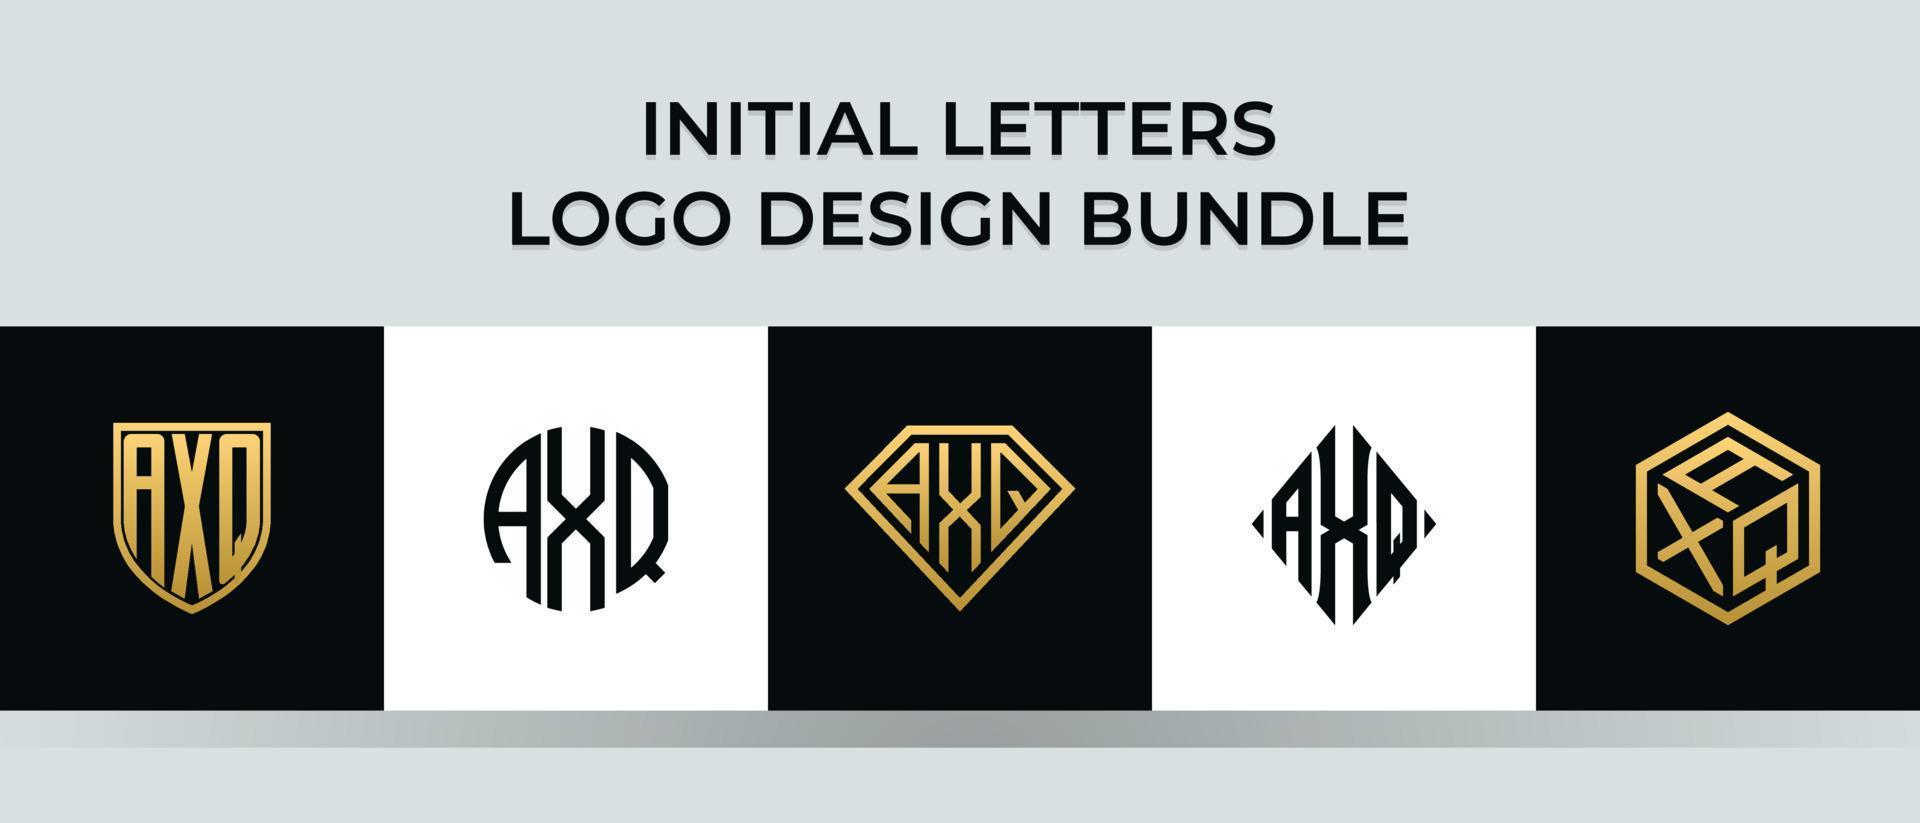 beginletters axq logo ontwerpen bundel vector